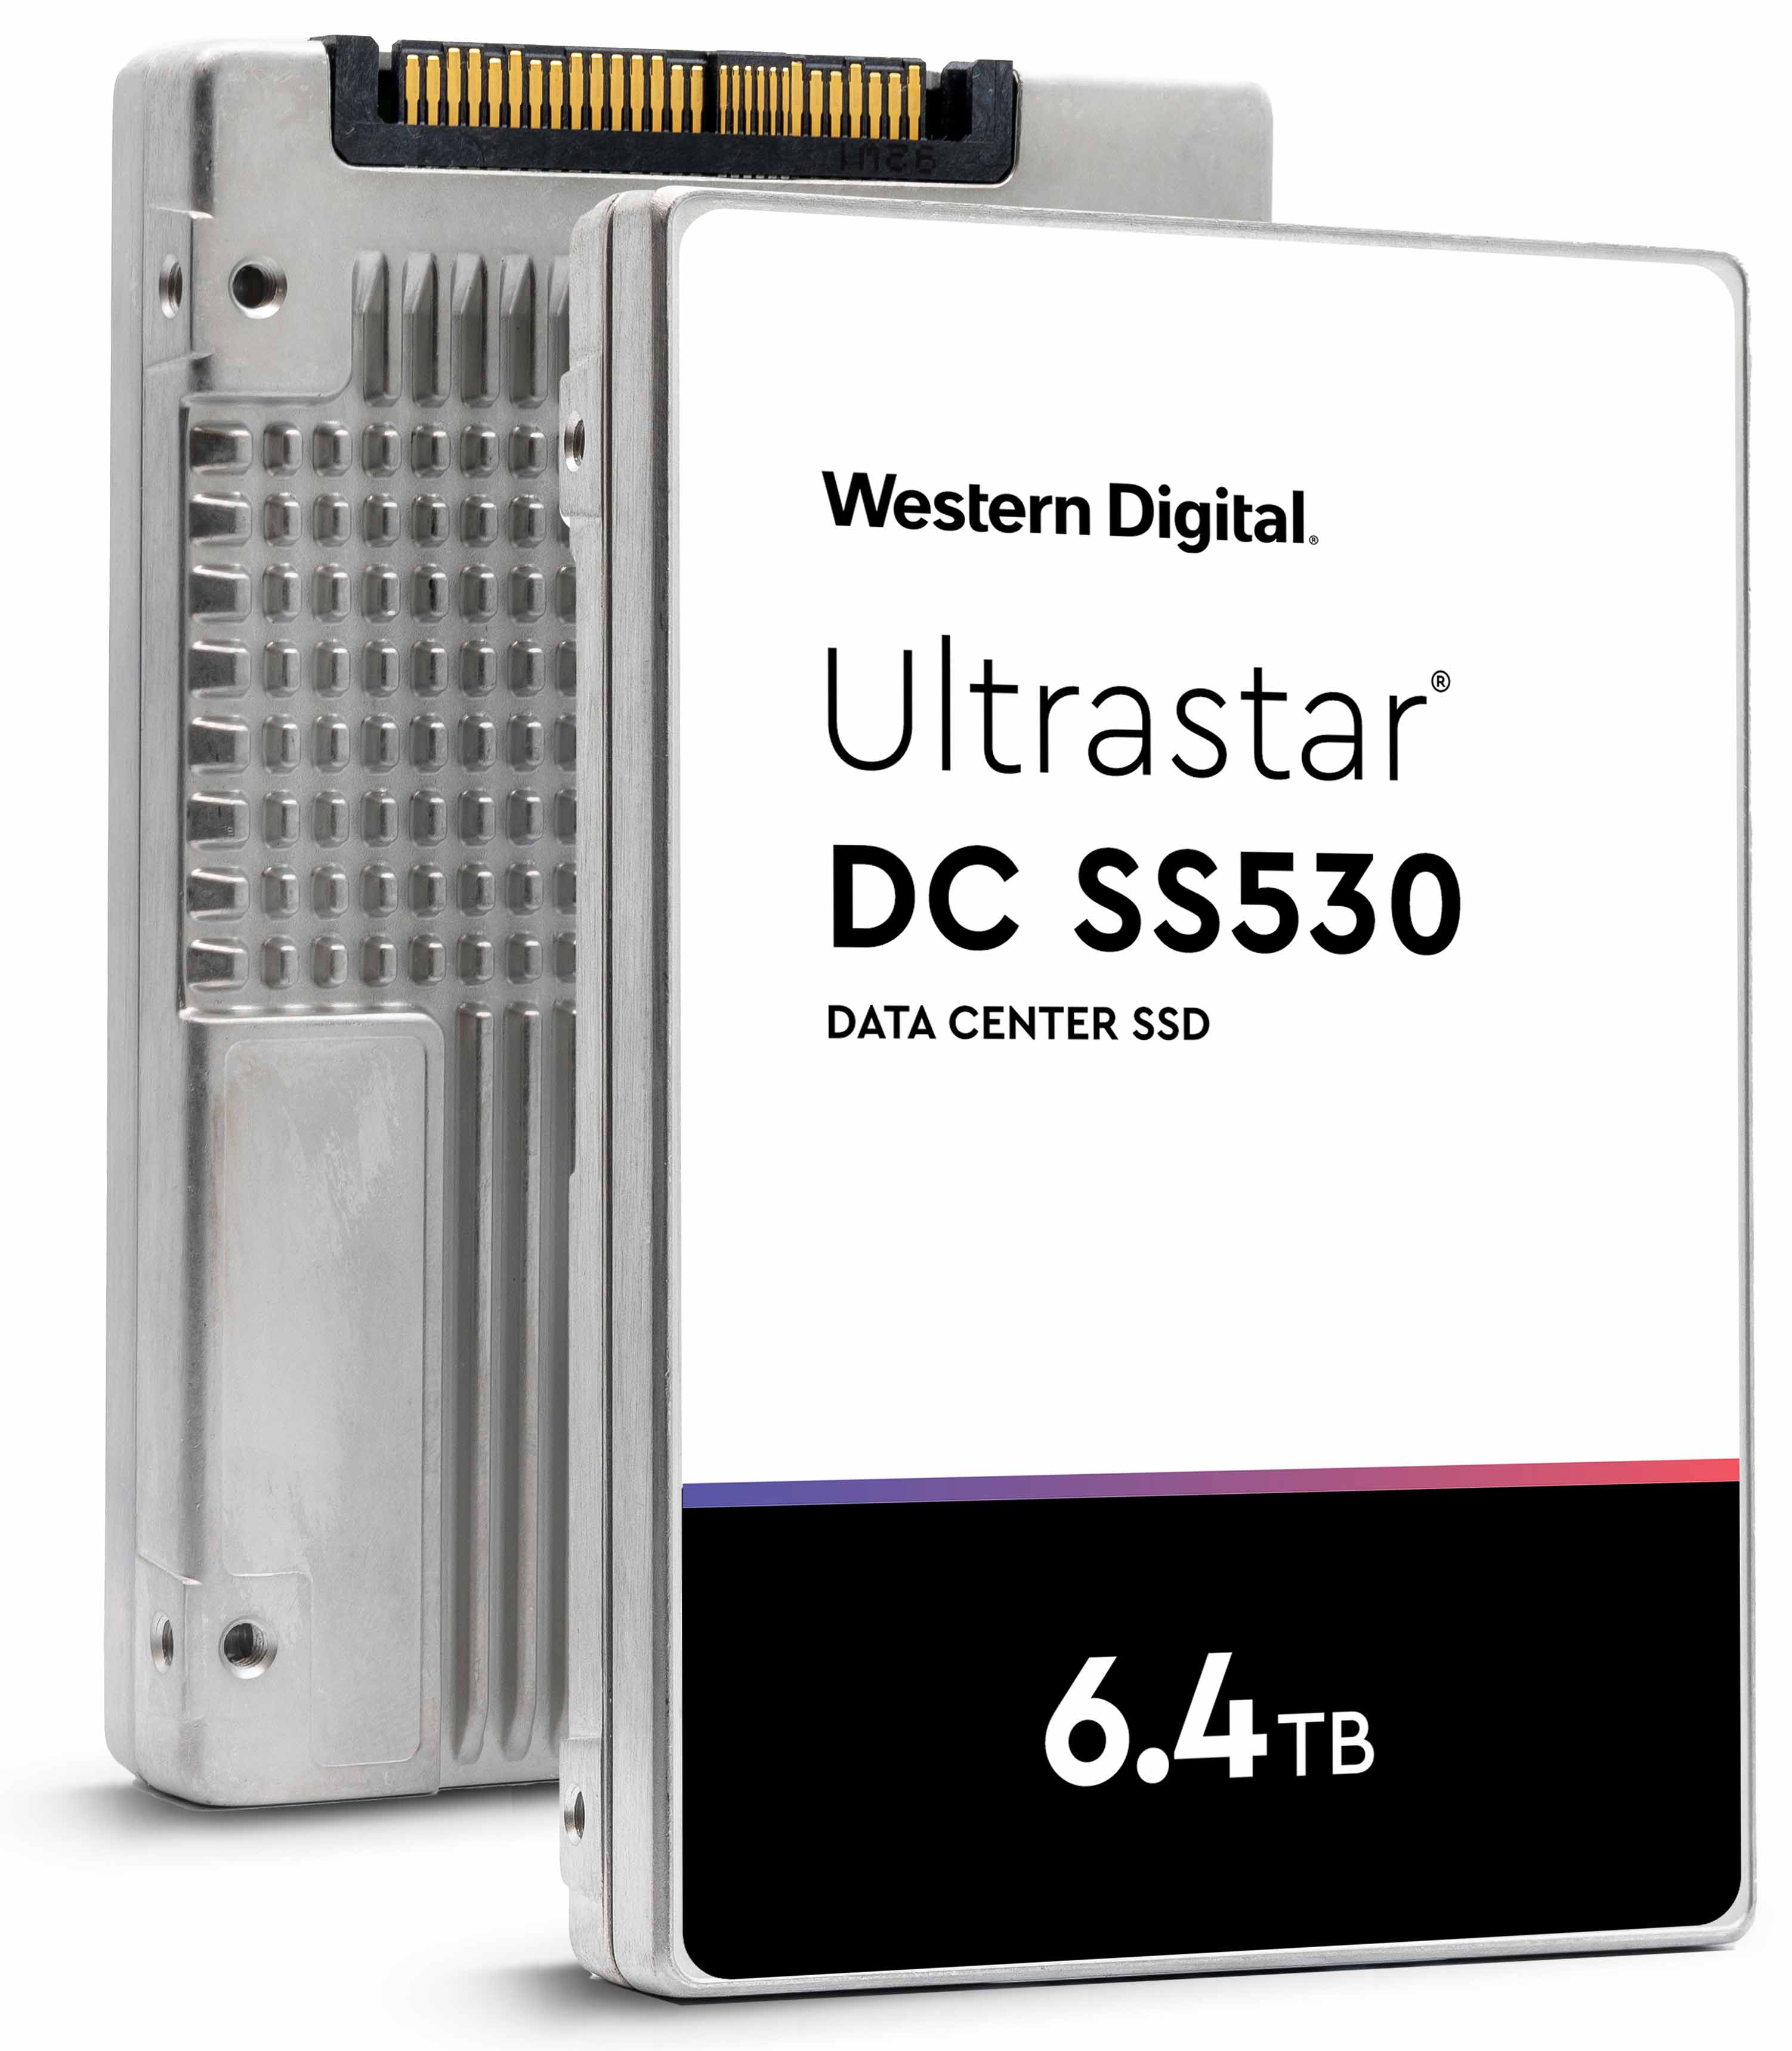 Western Digital Ultrastar DC SS530 WUSTR6464ASS204 0P40502 6.4TB SAS 12Gb/s 2.5" SE Solid State Drive